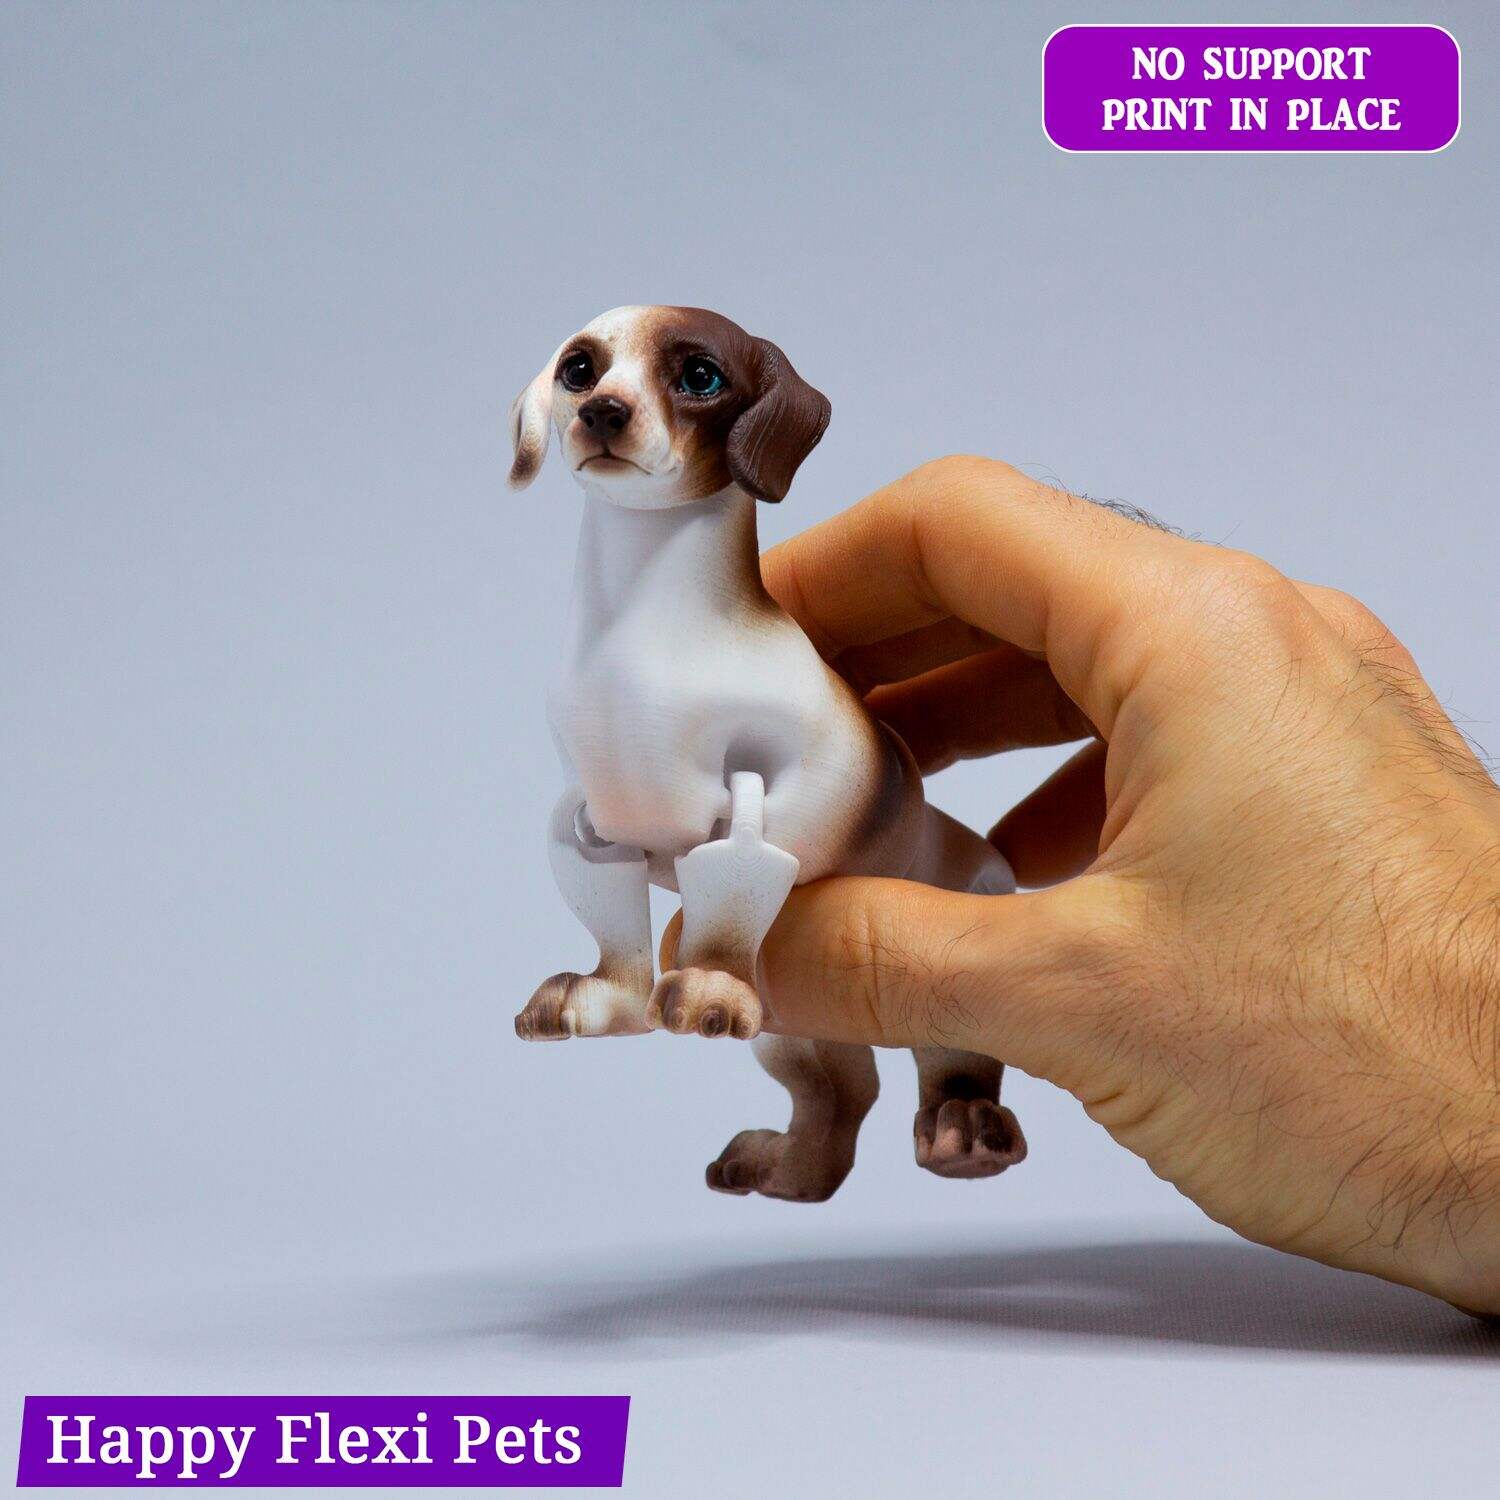 Weenie the dachshund (sausage dog, dackel) articulated toy